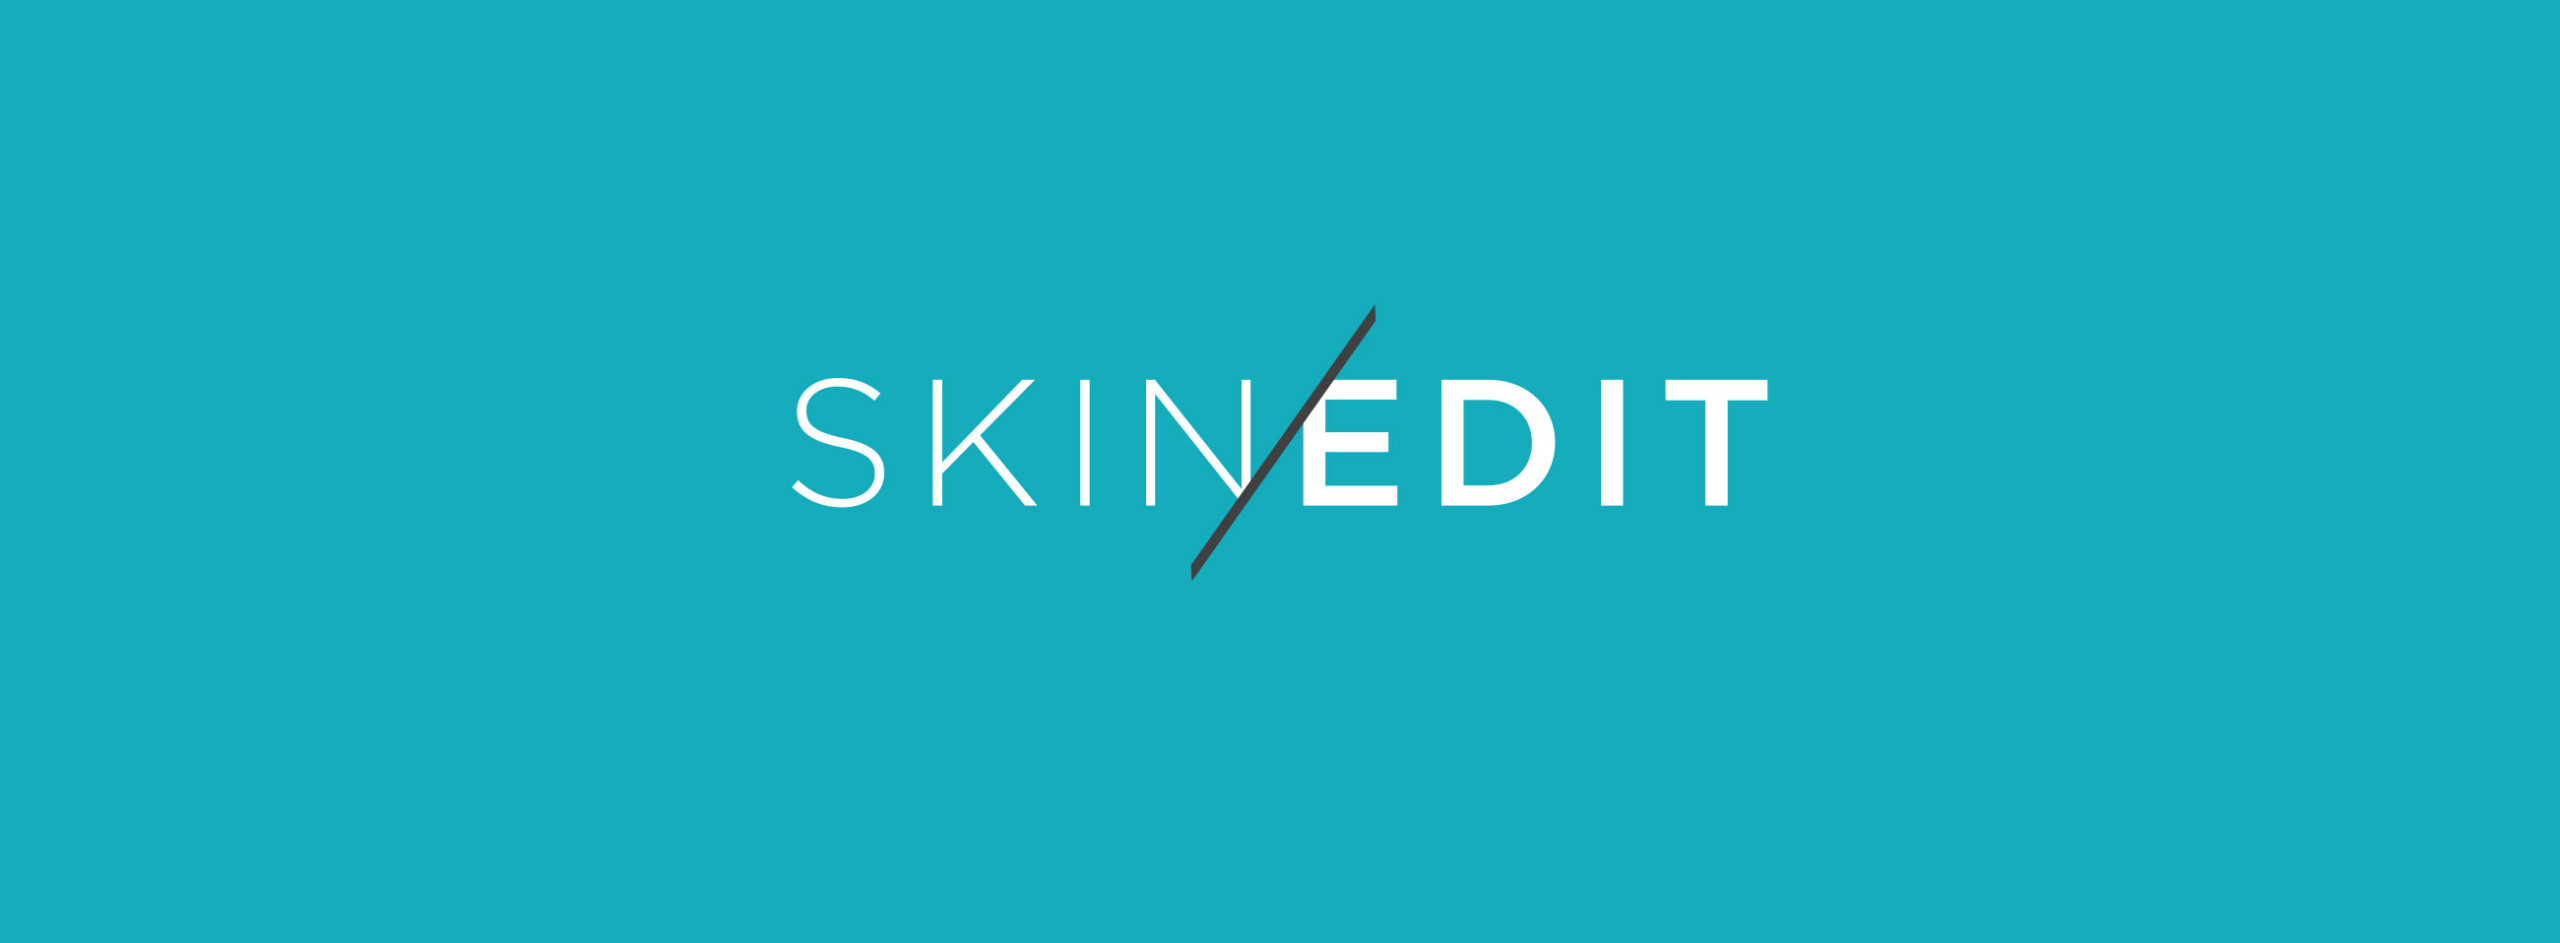 MED: Skin-Editor